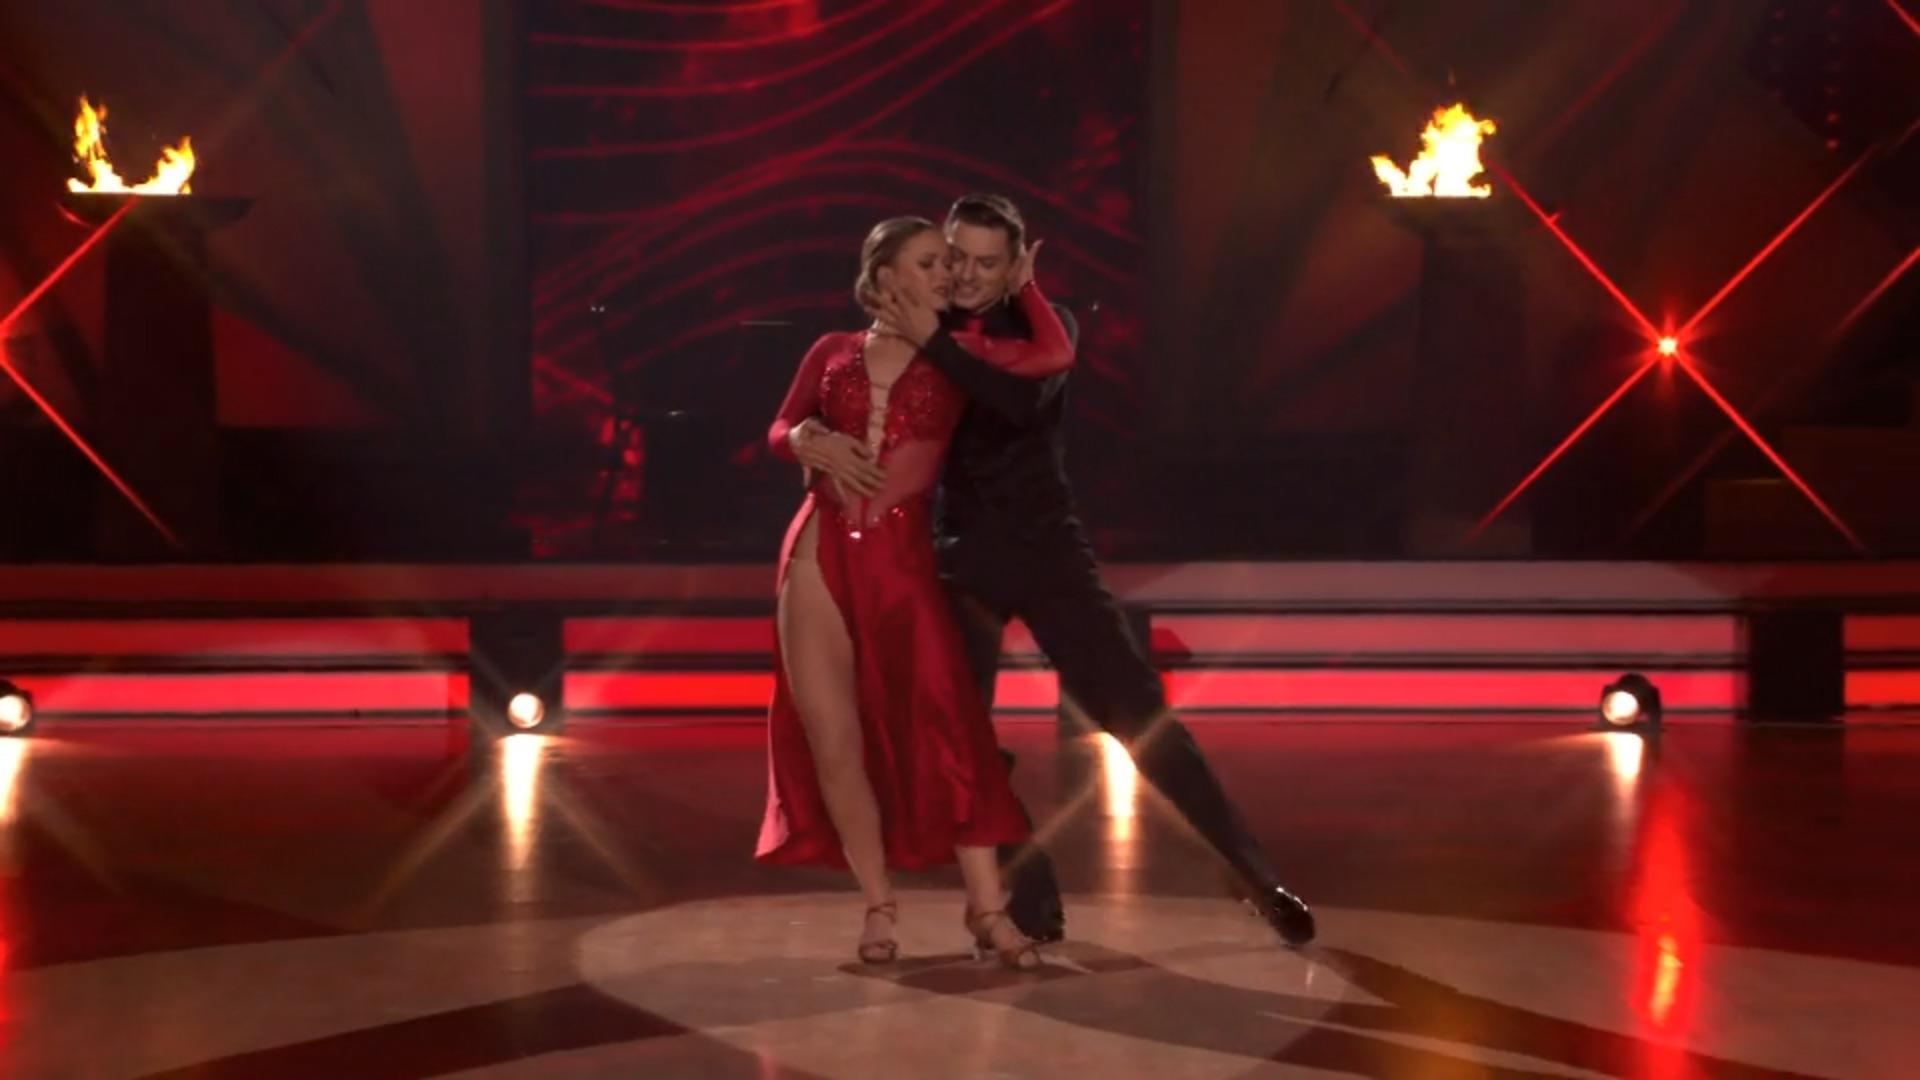 Julia Biotics incendia il parquet con un tango caldissimo "Balliamo"-scorso